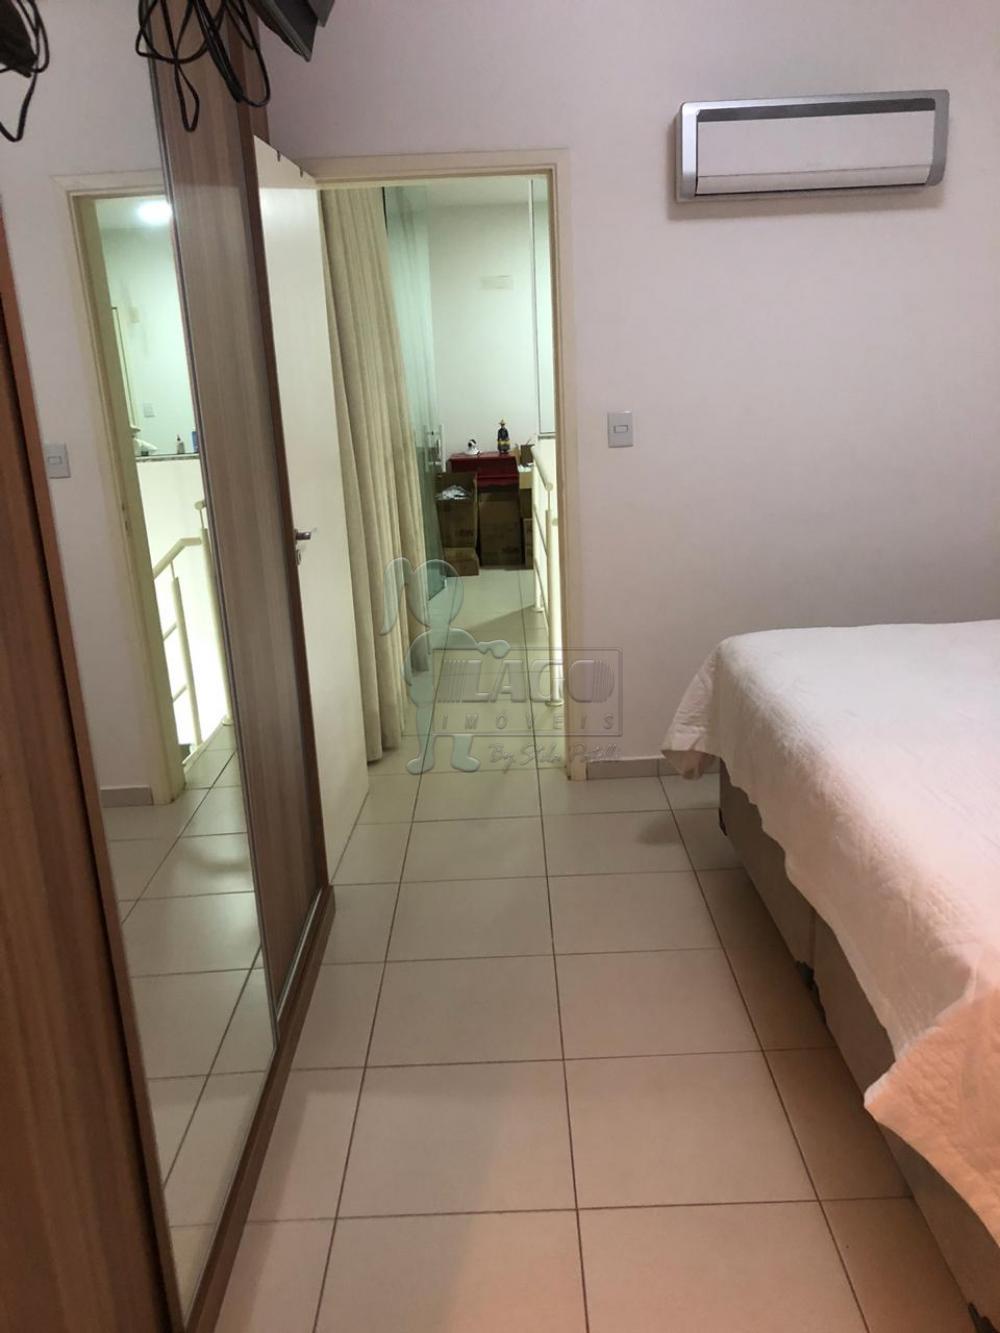 Comprar Apartamento / Duplex em Ribeirão Preto R$ 315.000,00 - Foto 7